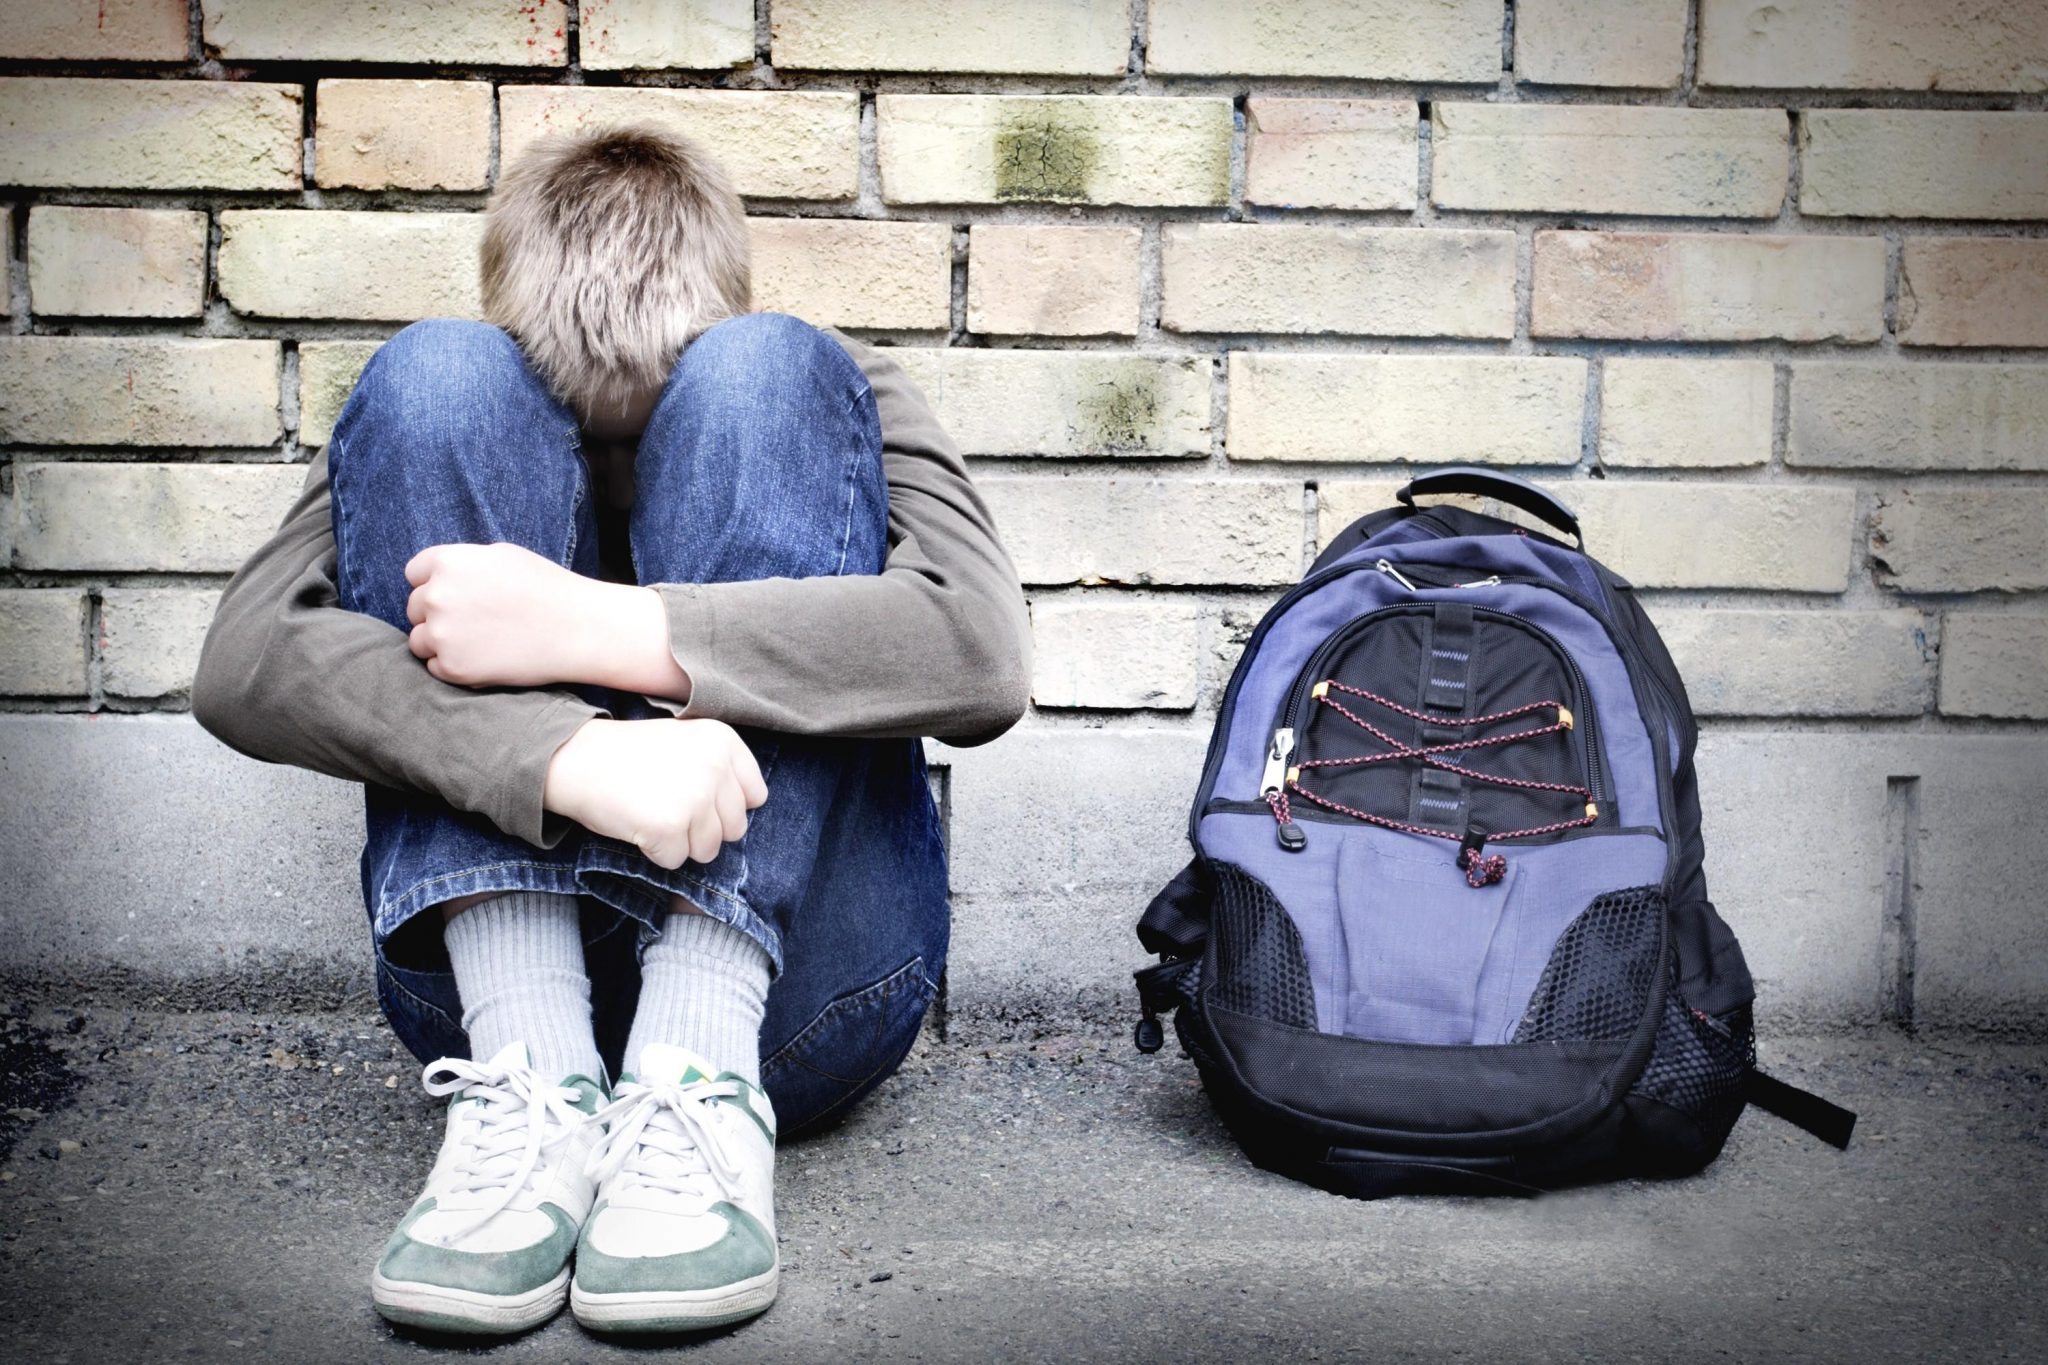 Bullismo a scuola nel Casertano: vittima un dodicenne